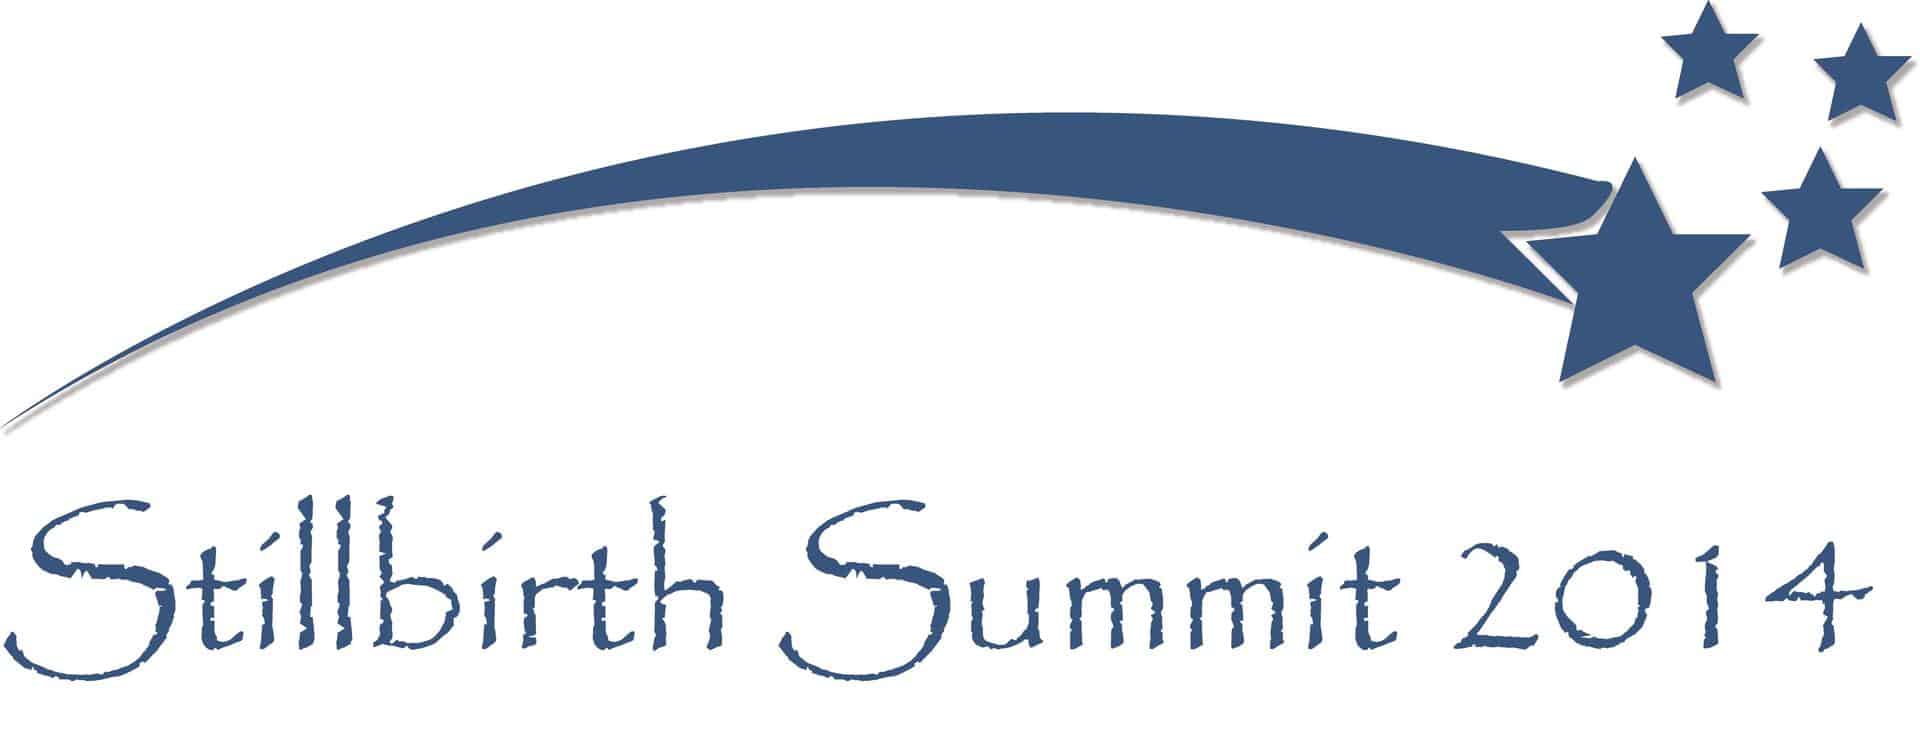 2014 Stillbirth_Summit logo